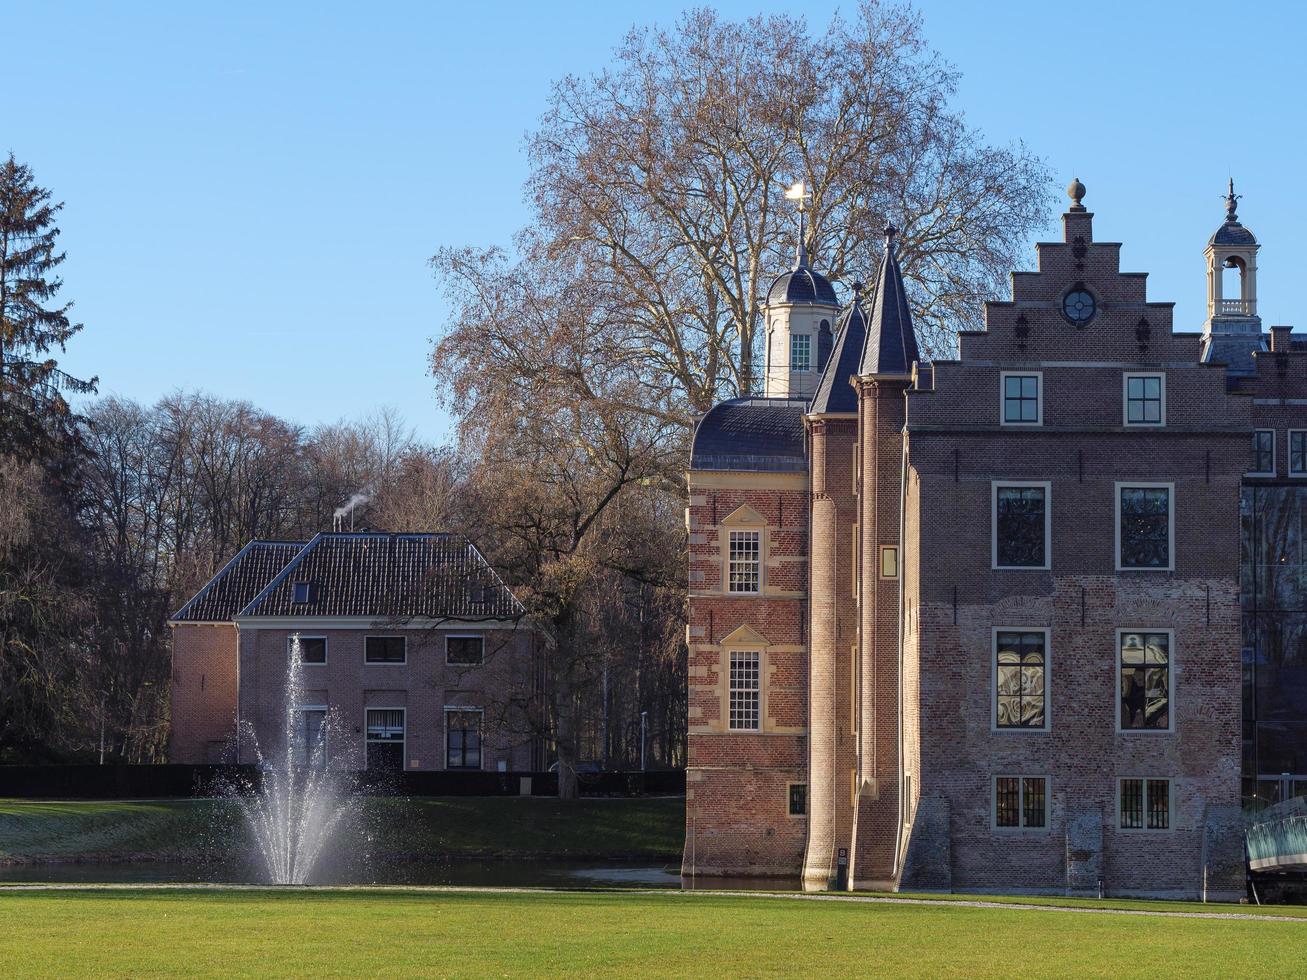 ruurlo slott i Nederländerna foto